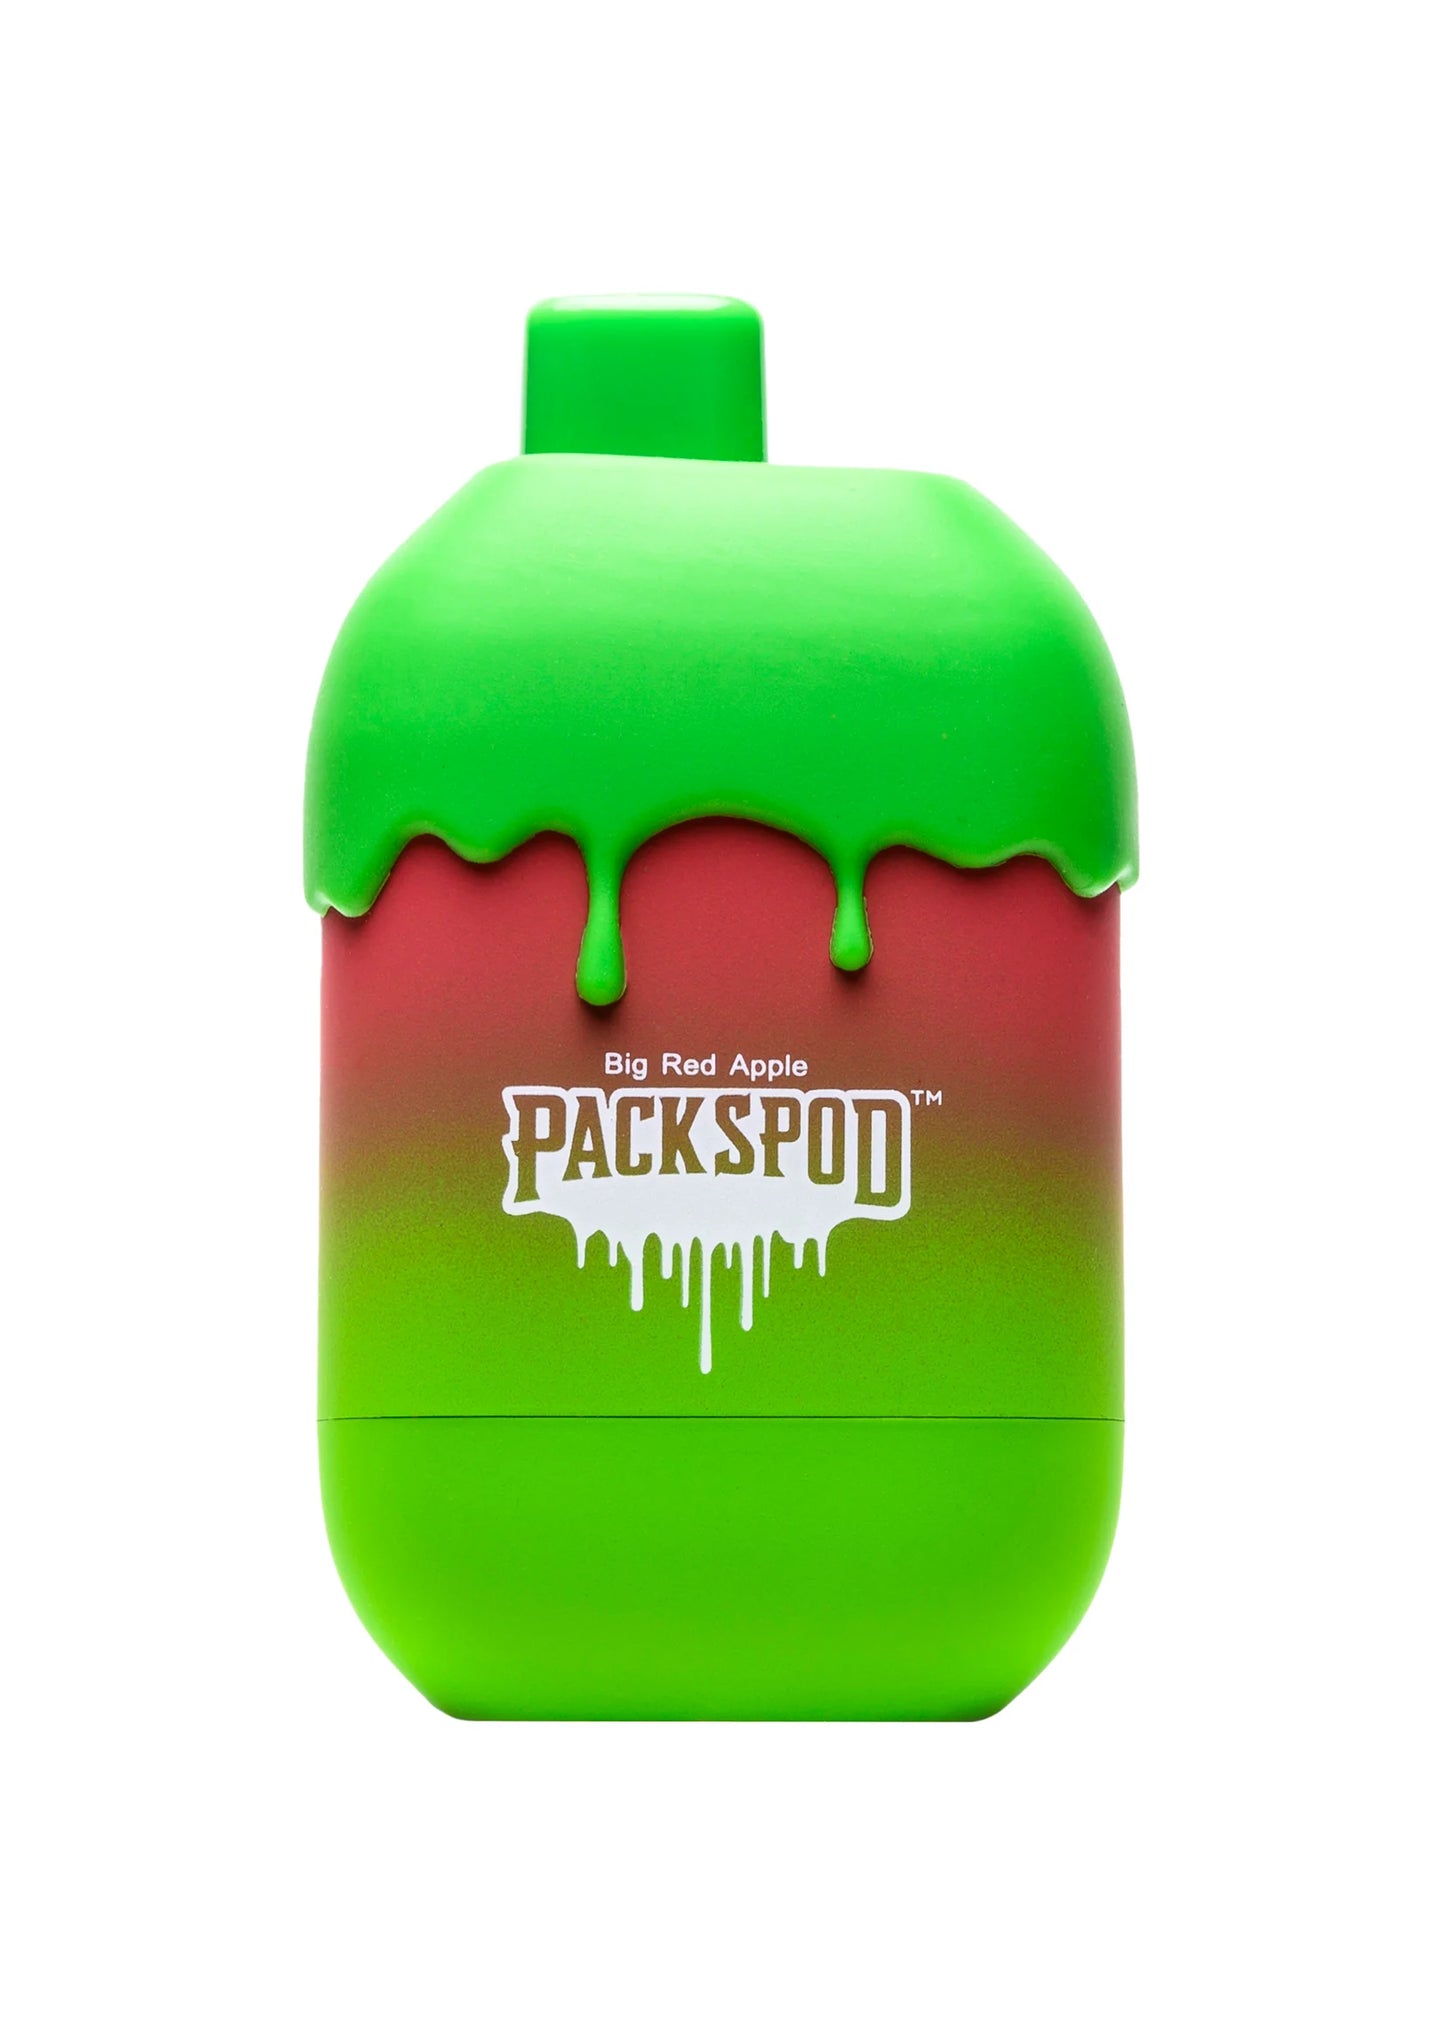 Packwoods-Packspod-5000-Big-Red-Apple-1653x2315-WEBP